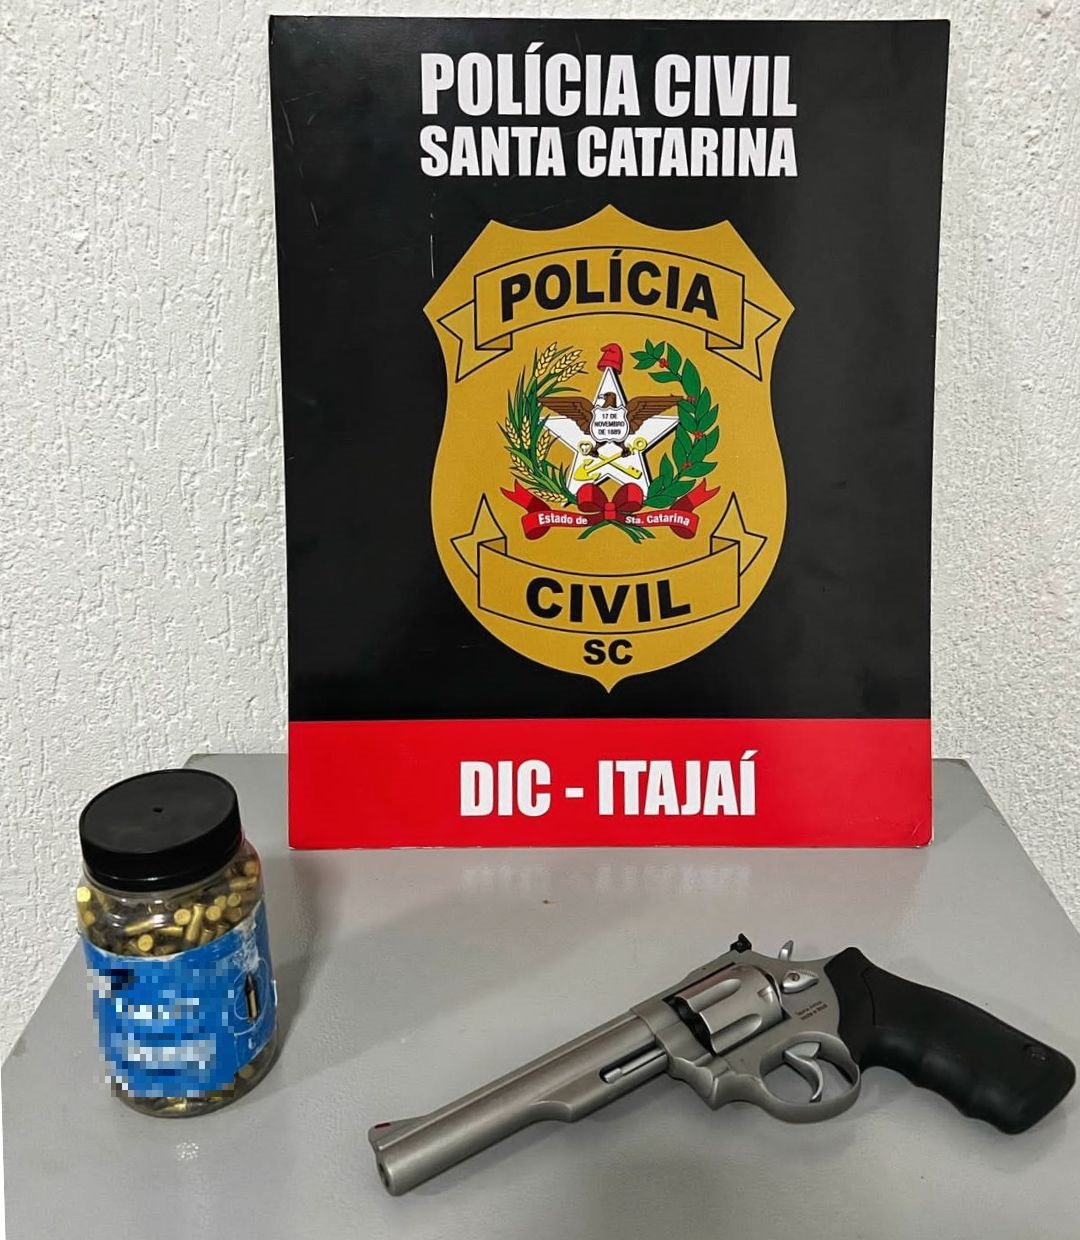 poster da dic de itajai, junto arma e um frasco com 400 munições